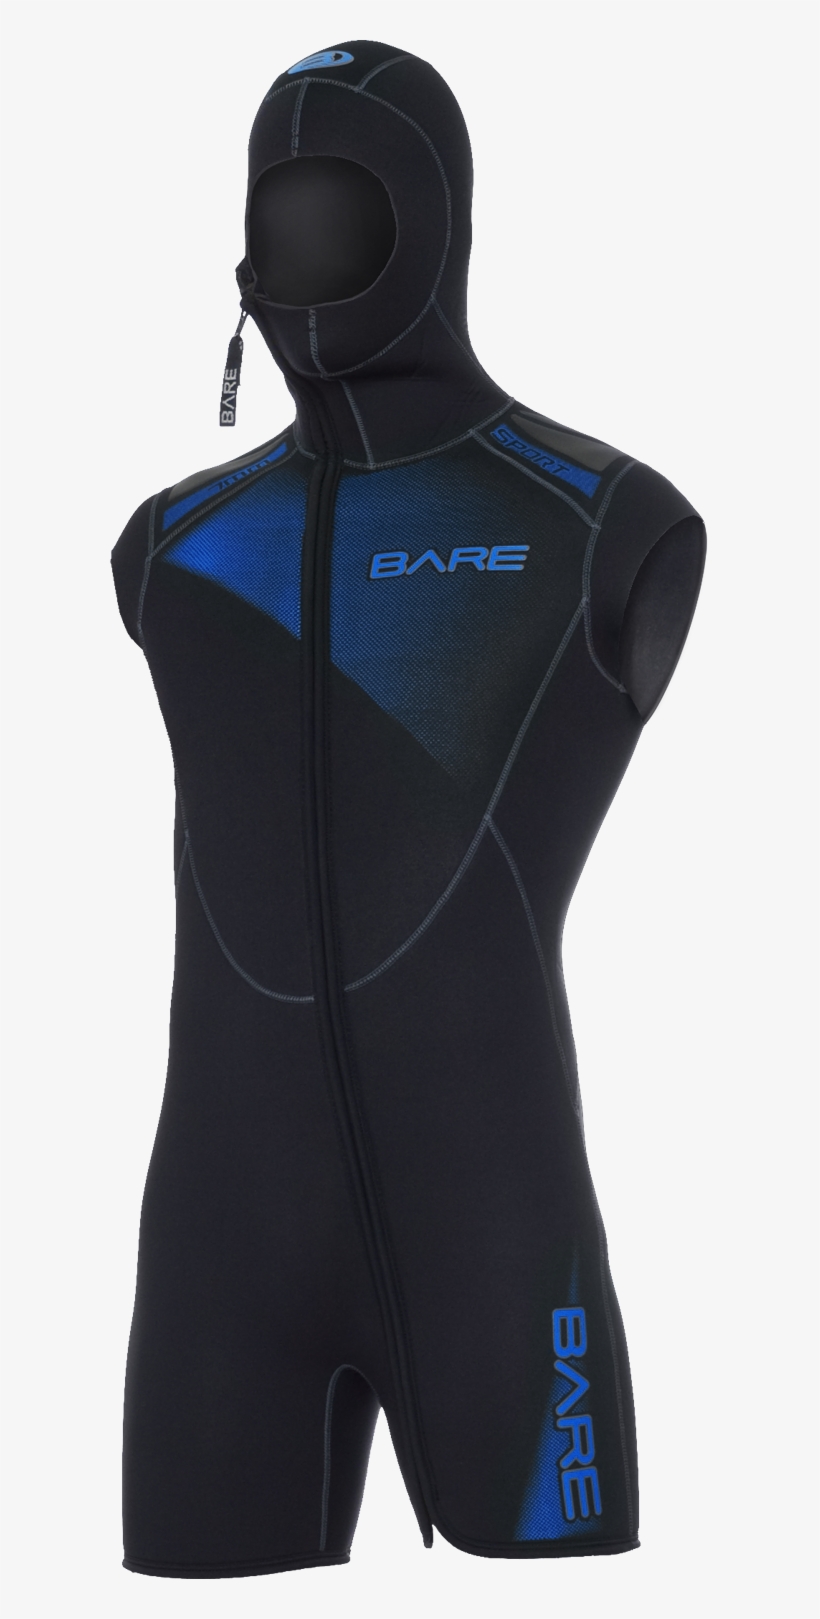 Bare Sport Hooded Vest - Bare 7mm Sport Men's Step-in Hooded Vest For Scuba, transparent png #3389674